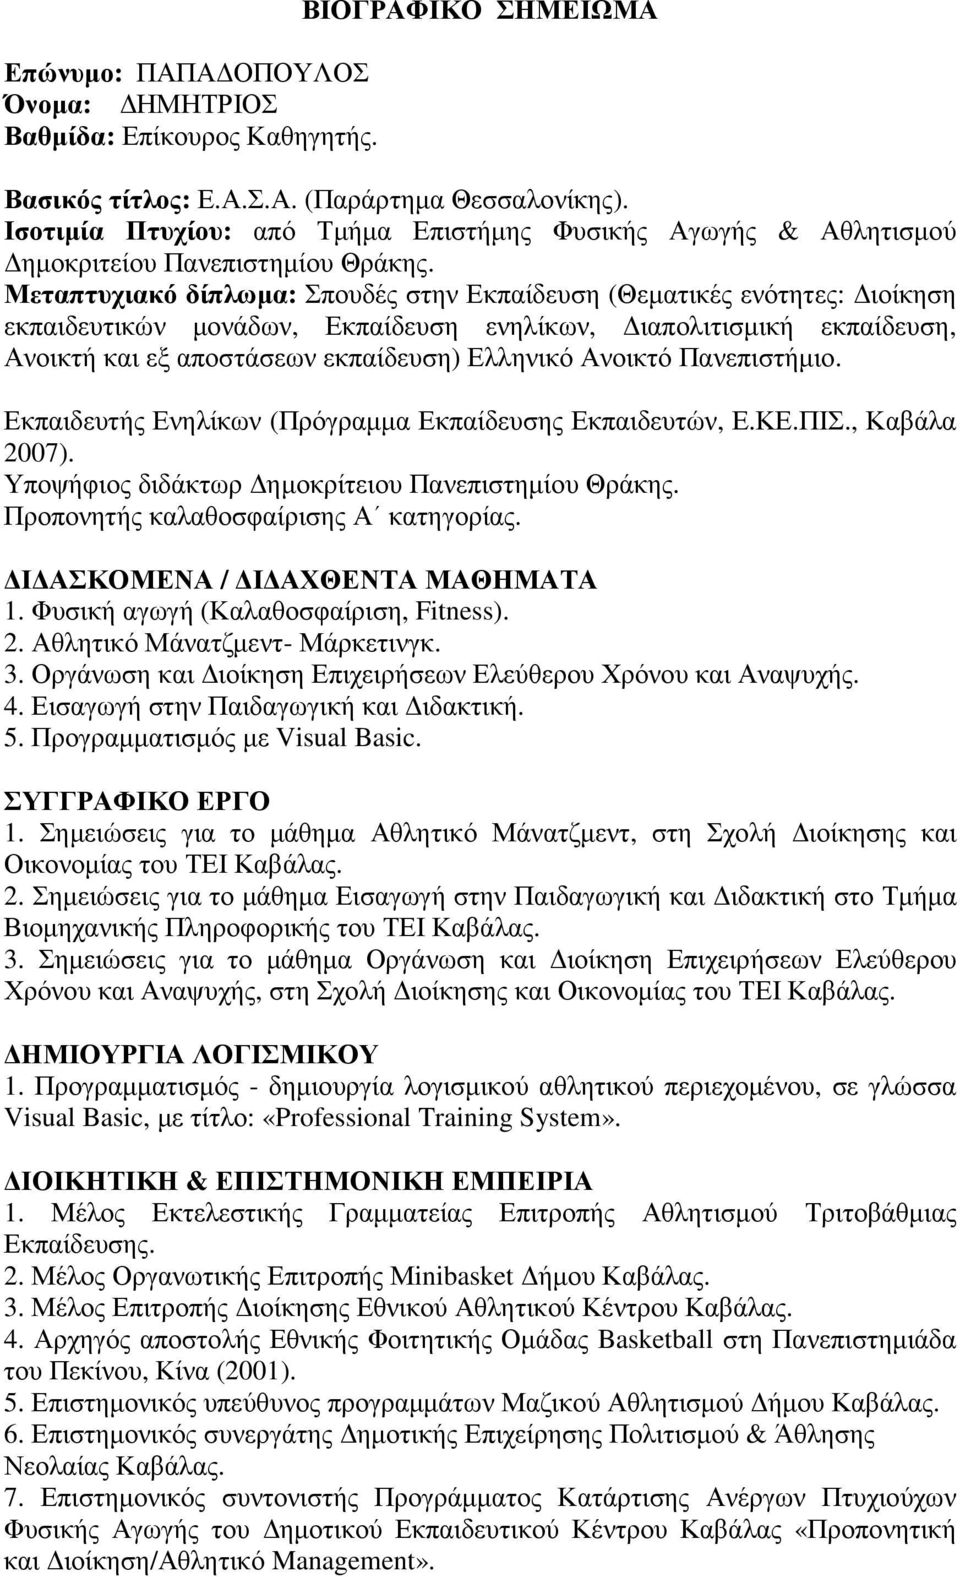 Μεταπτυχιακό δίπλωµα: Σπουδές στην Εκπαίδευση (Θεµατικές ενότητες: ιοίκηση εκπαιδευτικών µονάδων, Εκπαίδευση ενηλίκων, ιαπολιτισµική εκπαίδευση, Ανοικτή και εξ αποστάσεων εκπαίδευση) Ελληνικό Ανοικτό